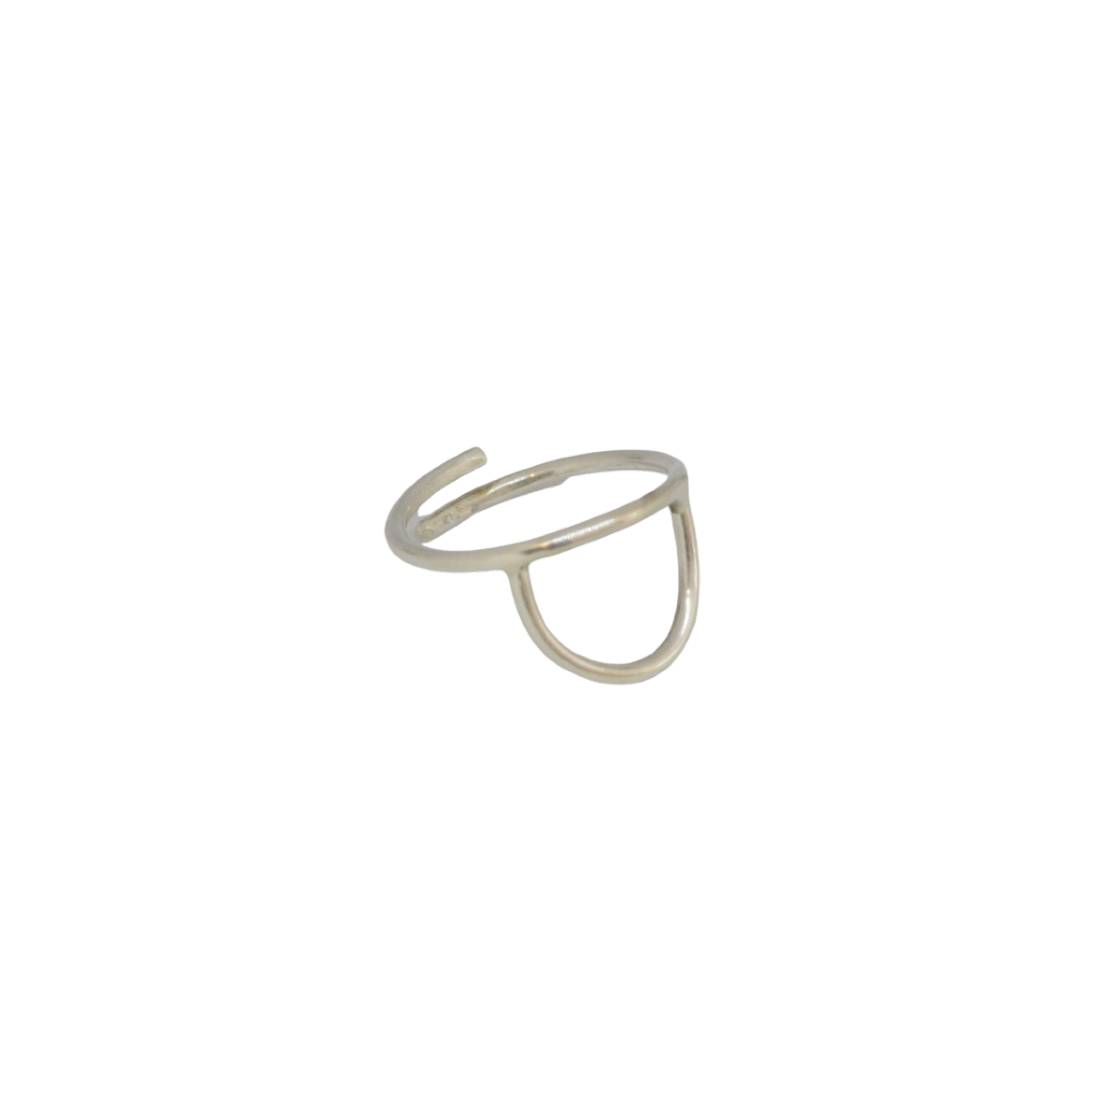 “Μισοφέγγαρο” ασημένιο δαχτυλίδι “Μισοφέγγαρο” ασημένιο δαχτυλίδι “Μισοφέγγαρο” ασημένιο δαχτυλίδι 4